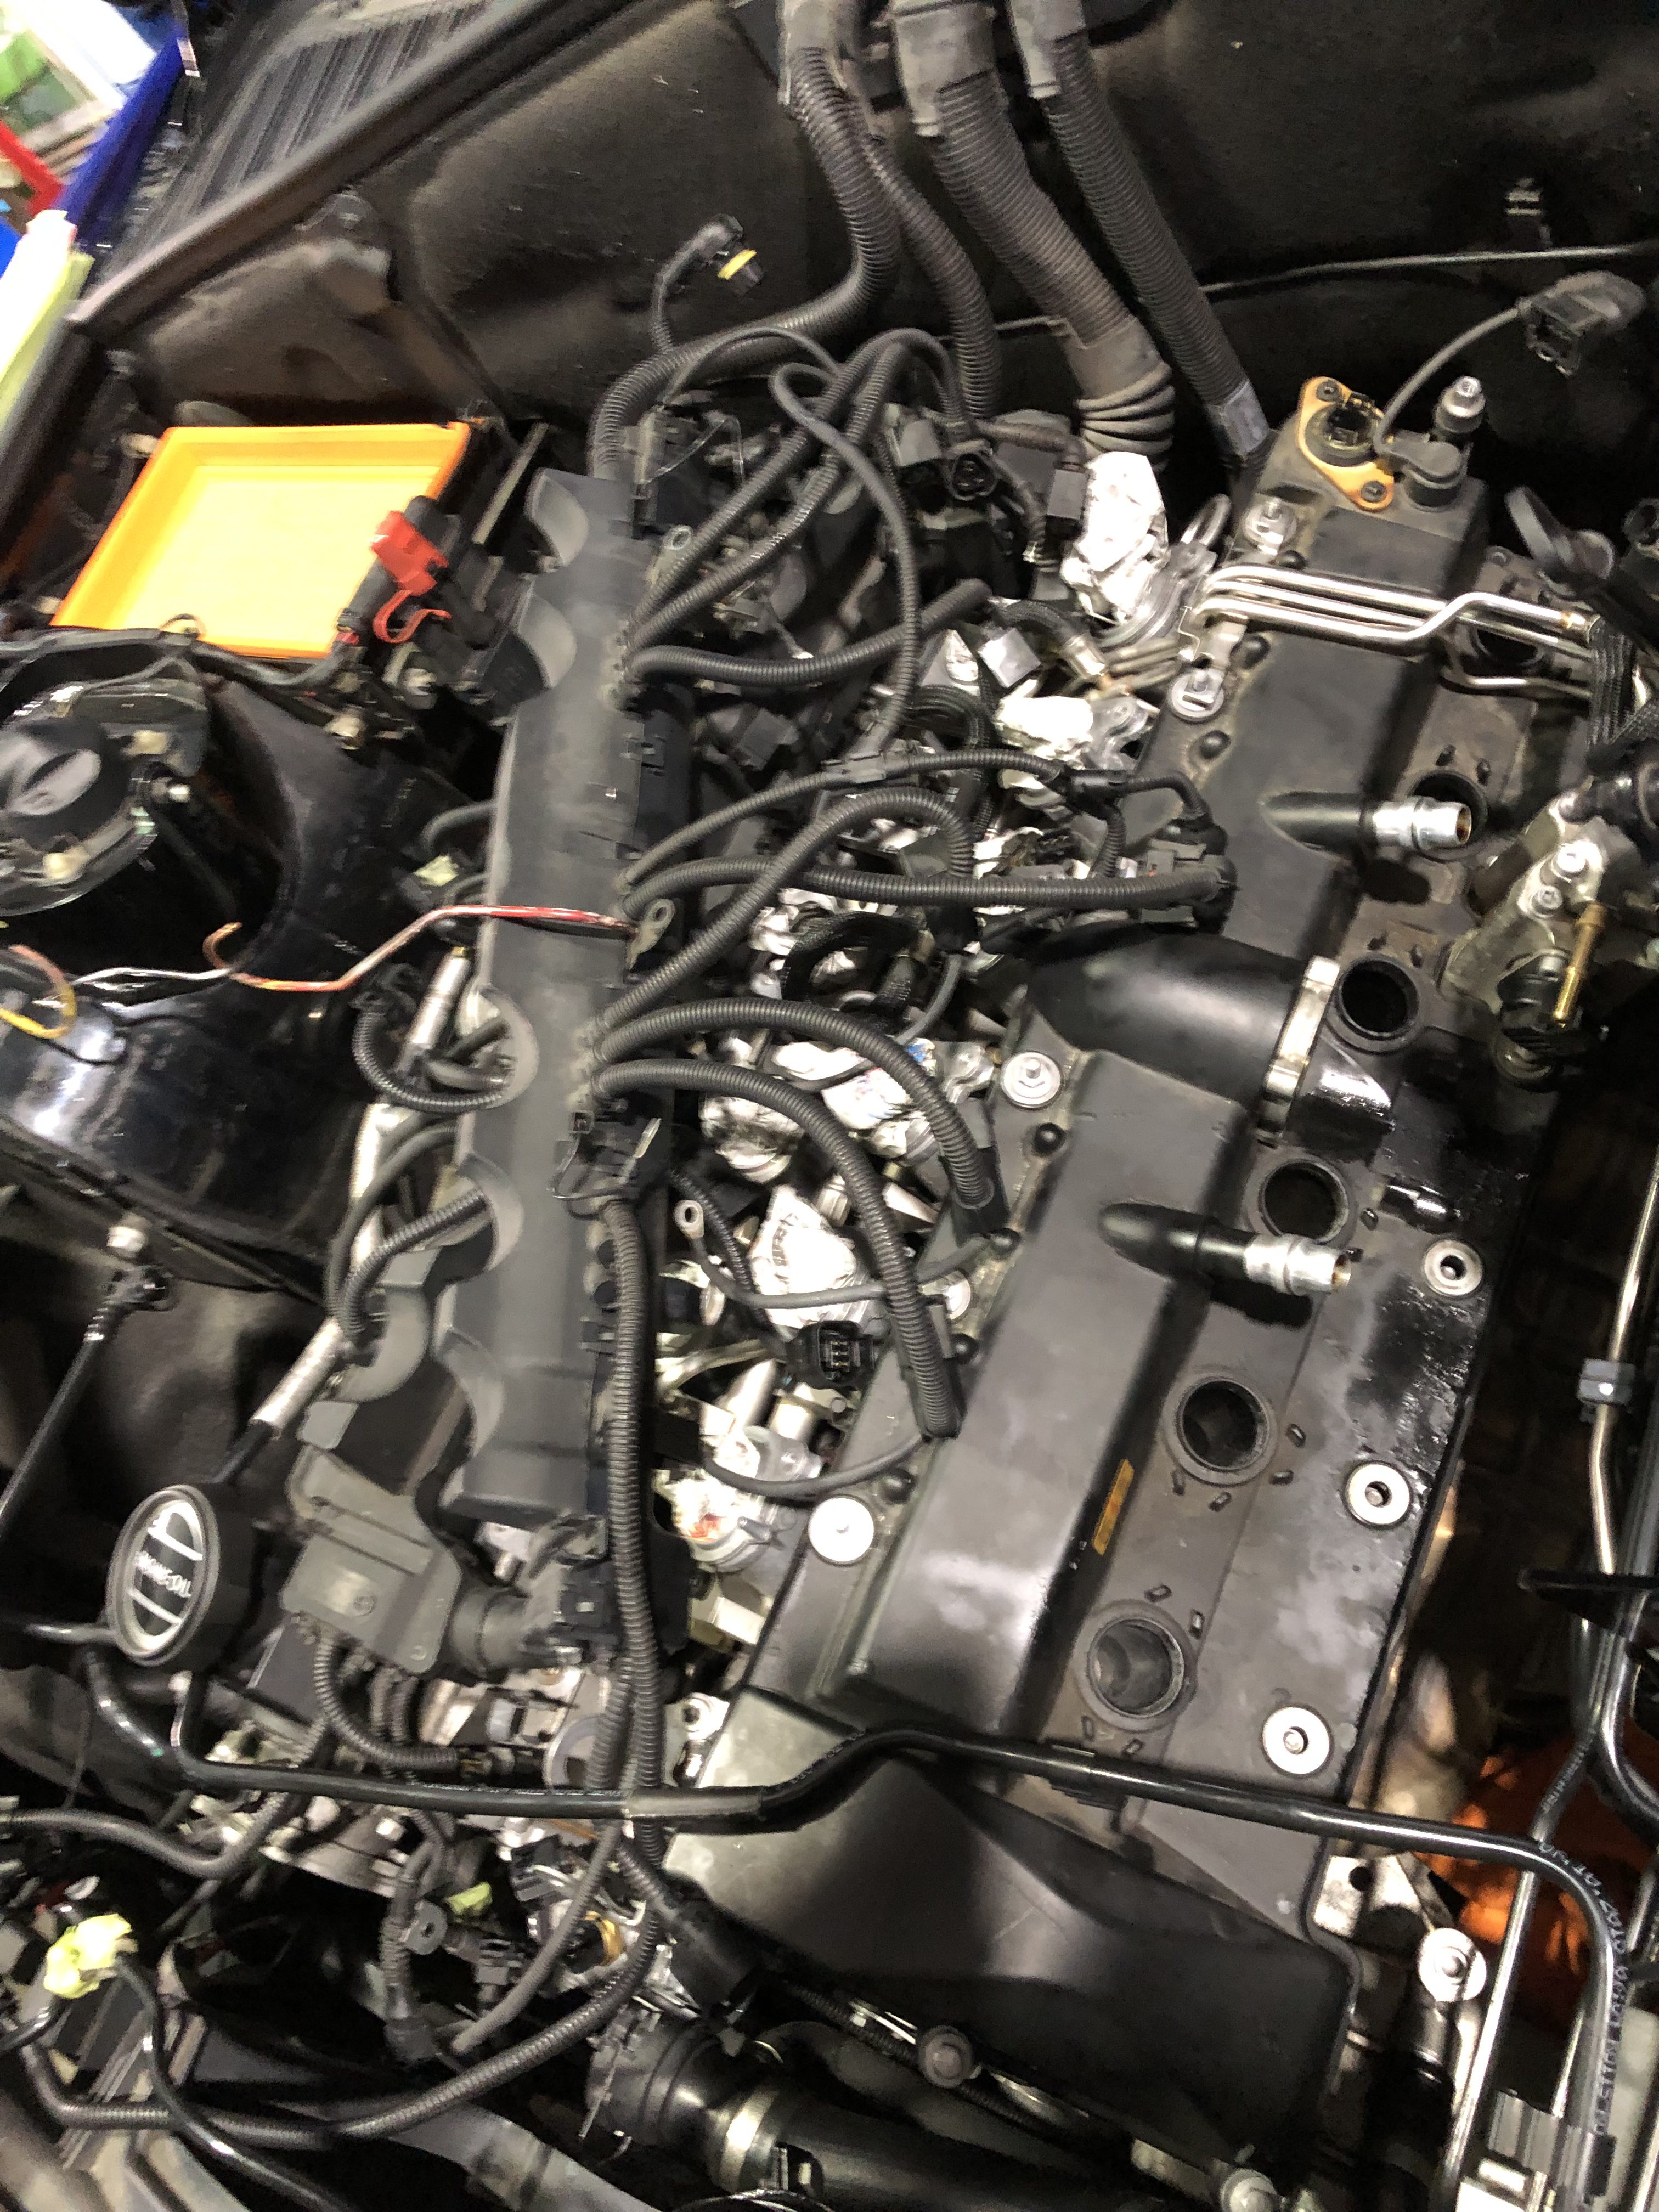 ロールスロイス ファントム オイル漏れ修理中 実績1万台以上 岐阜市の車の修理 クイック整備のアウトストラーダ